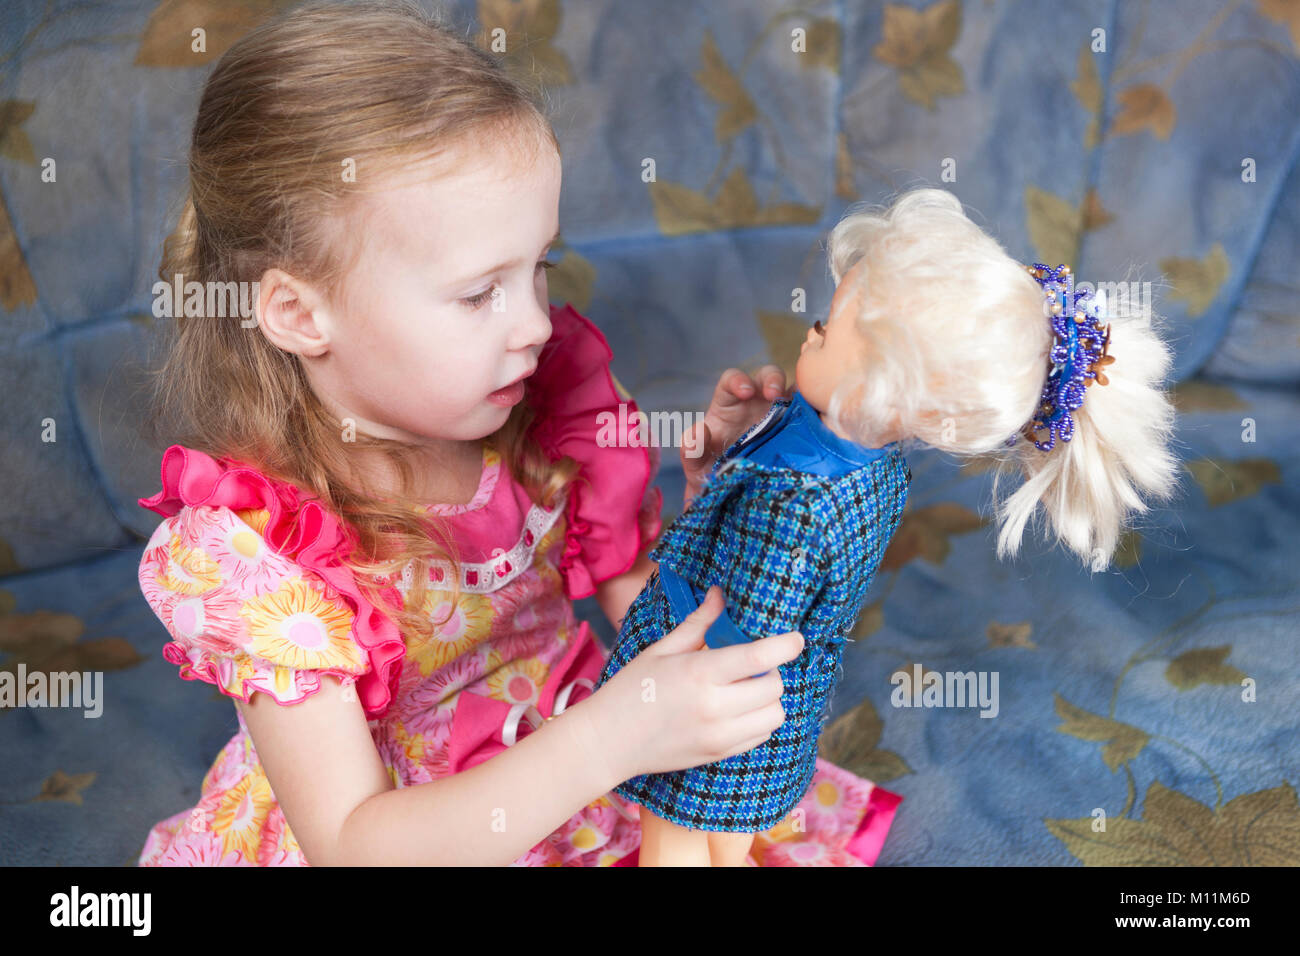 Картинка девочка с куклой. Куклы для девочек. Маленькая девочка с куклой. Куклы наряжать для девочек. Ребенок играющий в куклы.